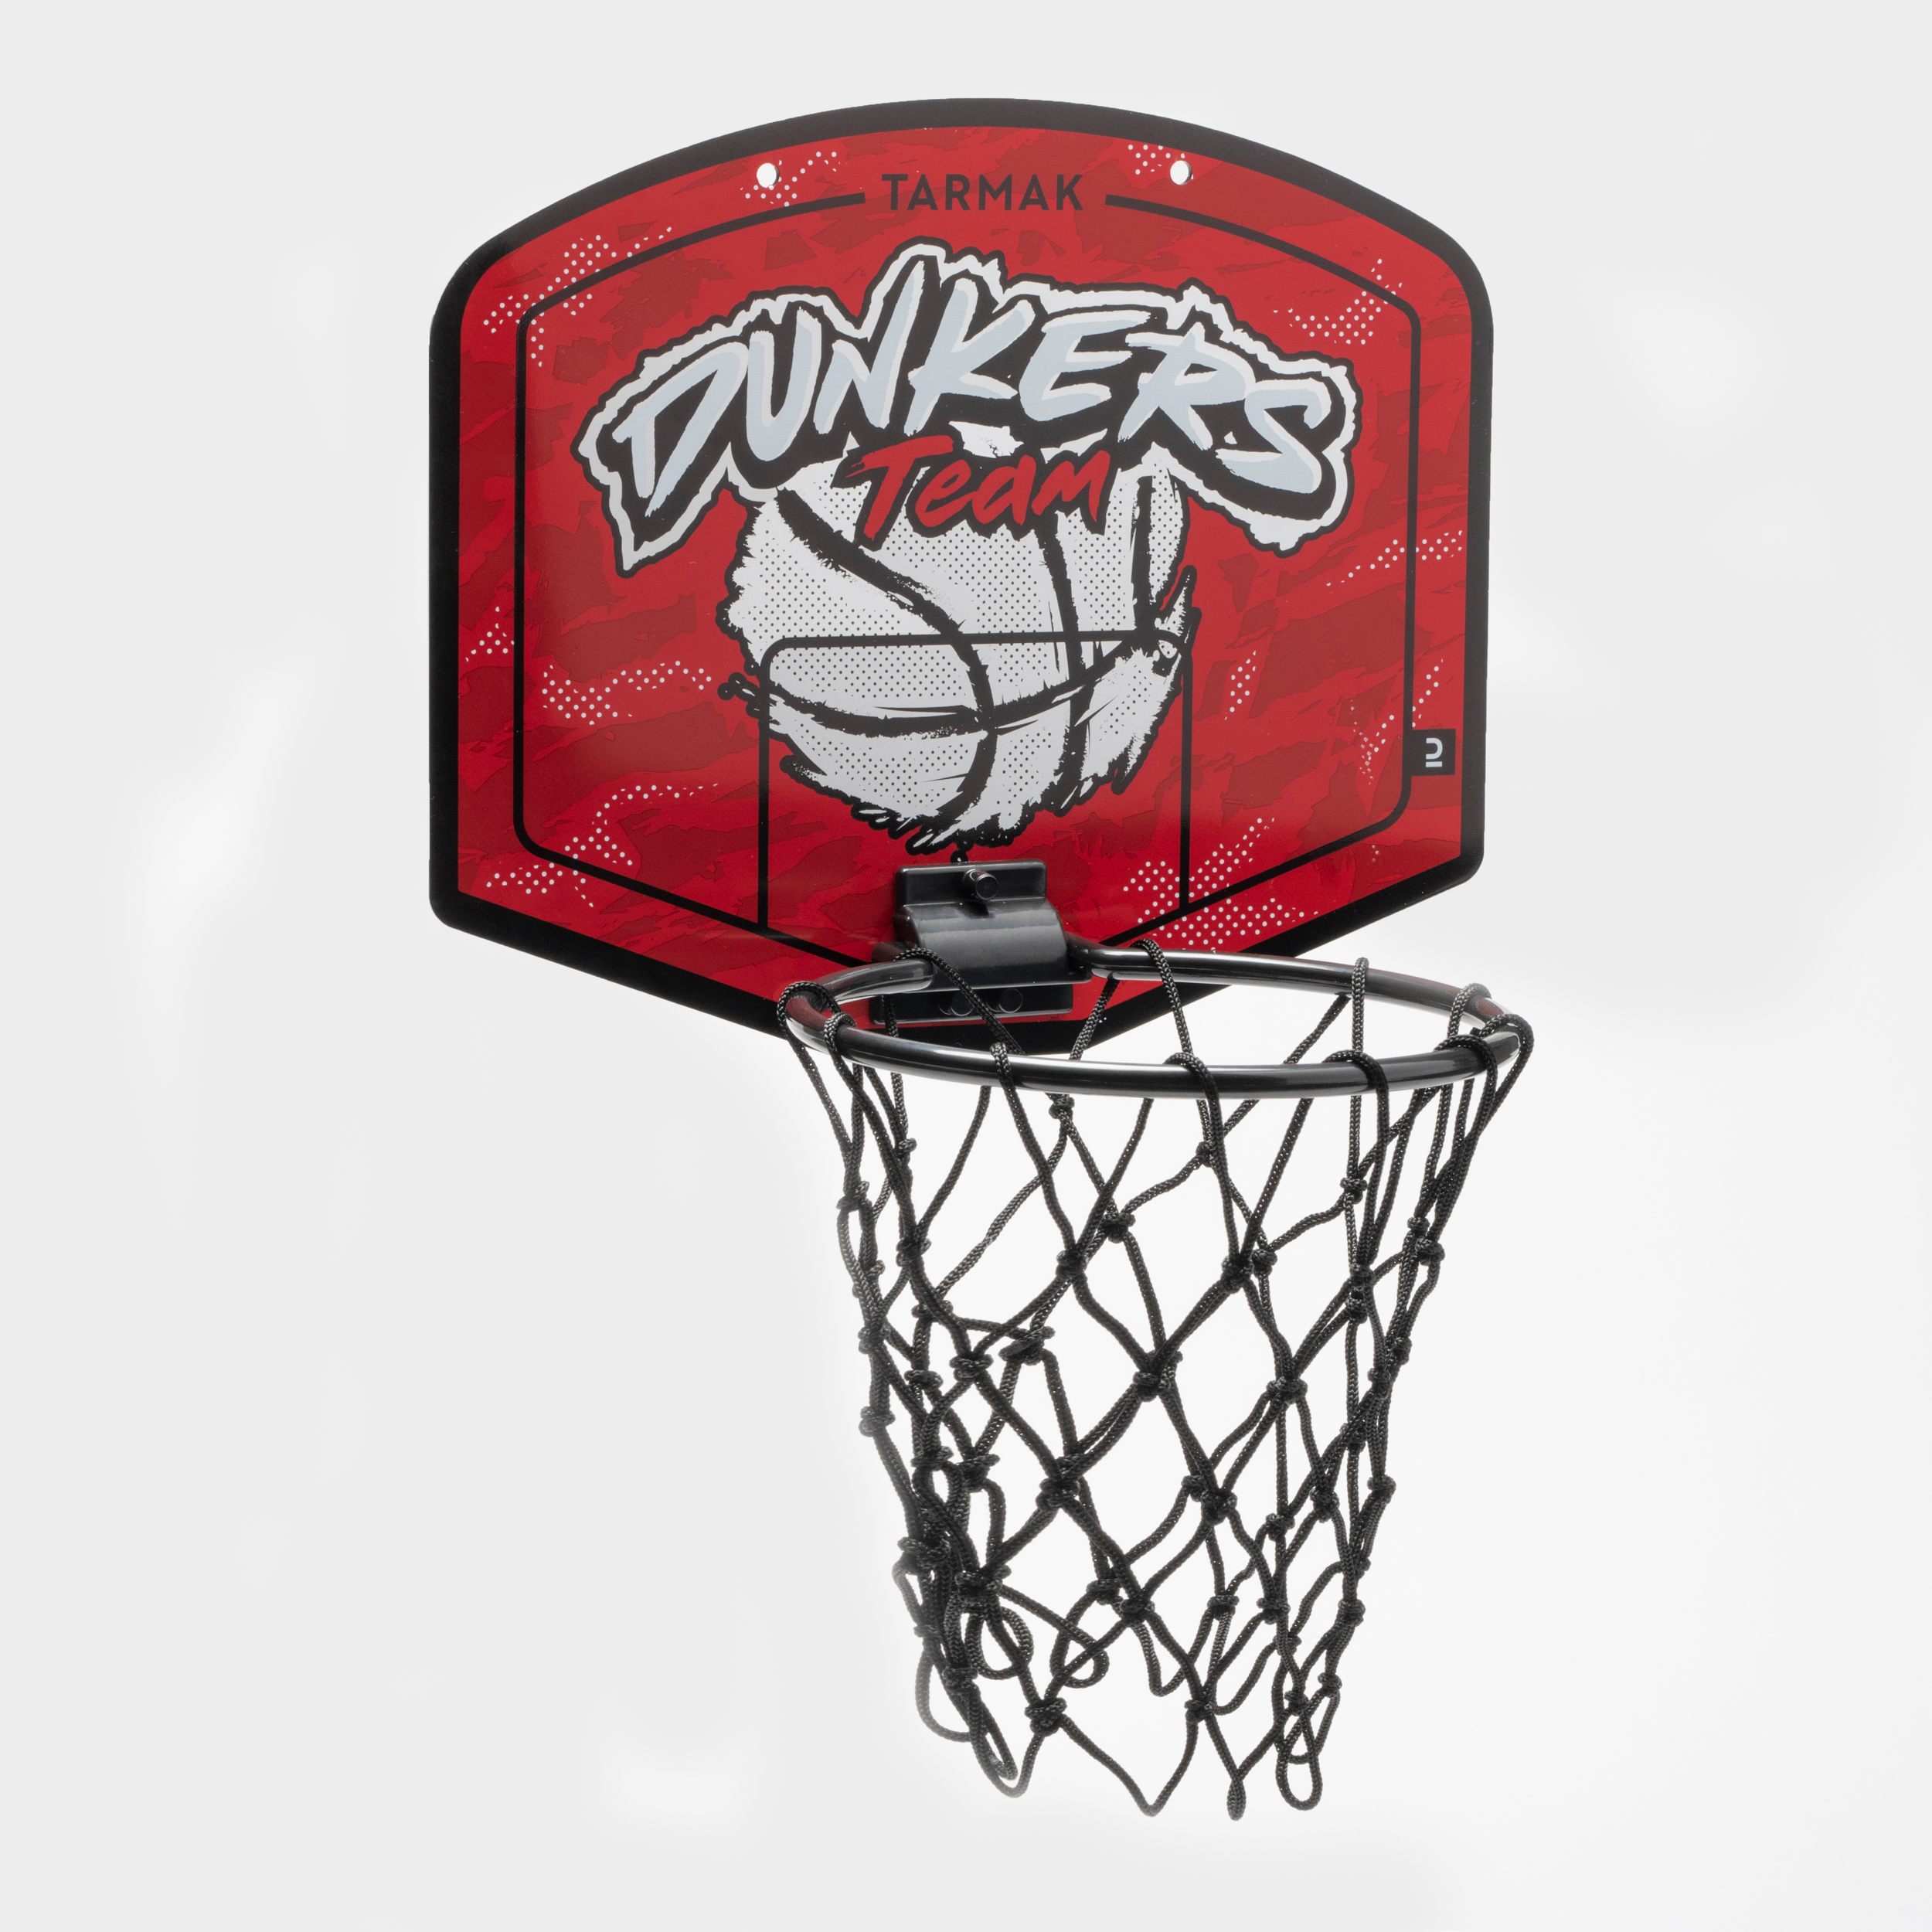 Mini Panier de Basket Mural, Panier de Basket Intérieur avec 2